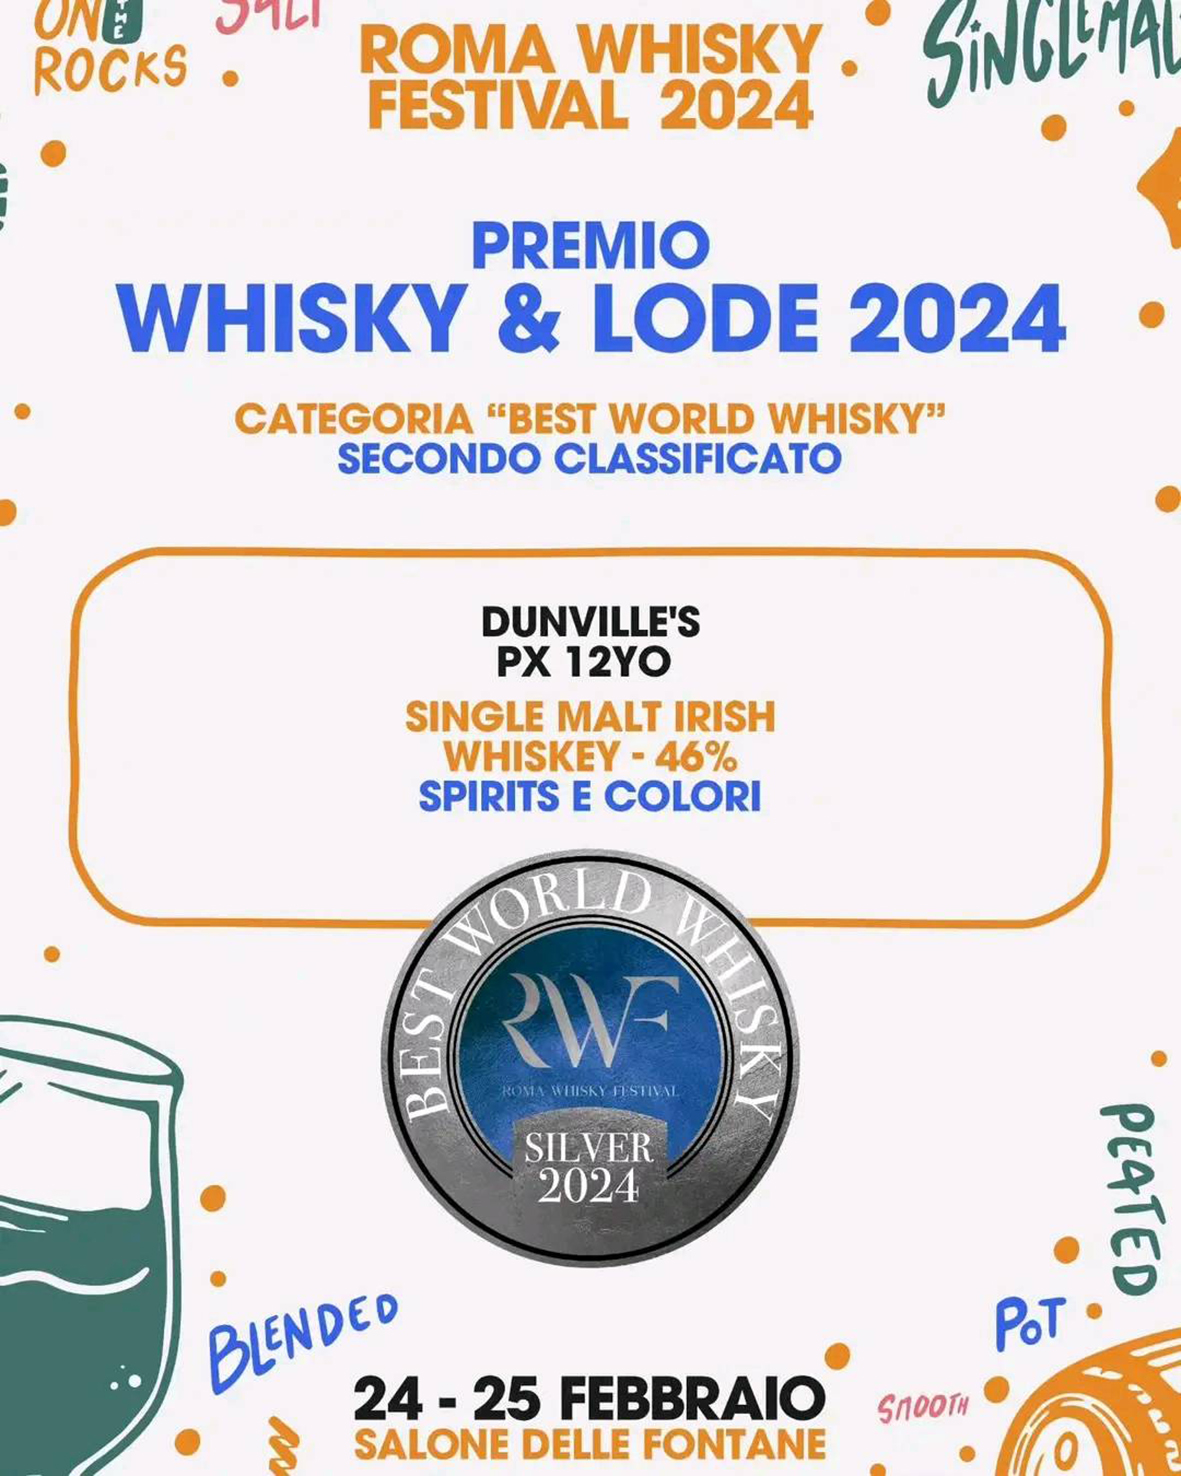 Spirits&Colori al Roma Whisky Festival lancia nuovi whisky e vince la medaglia d'argento con Dunville's PX 12 anni